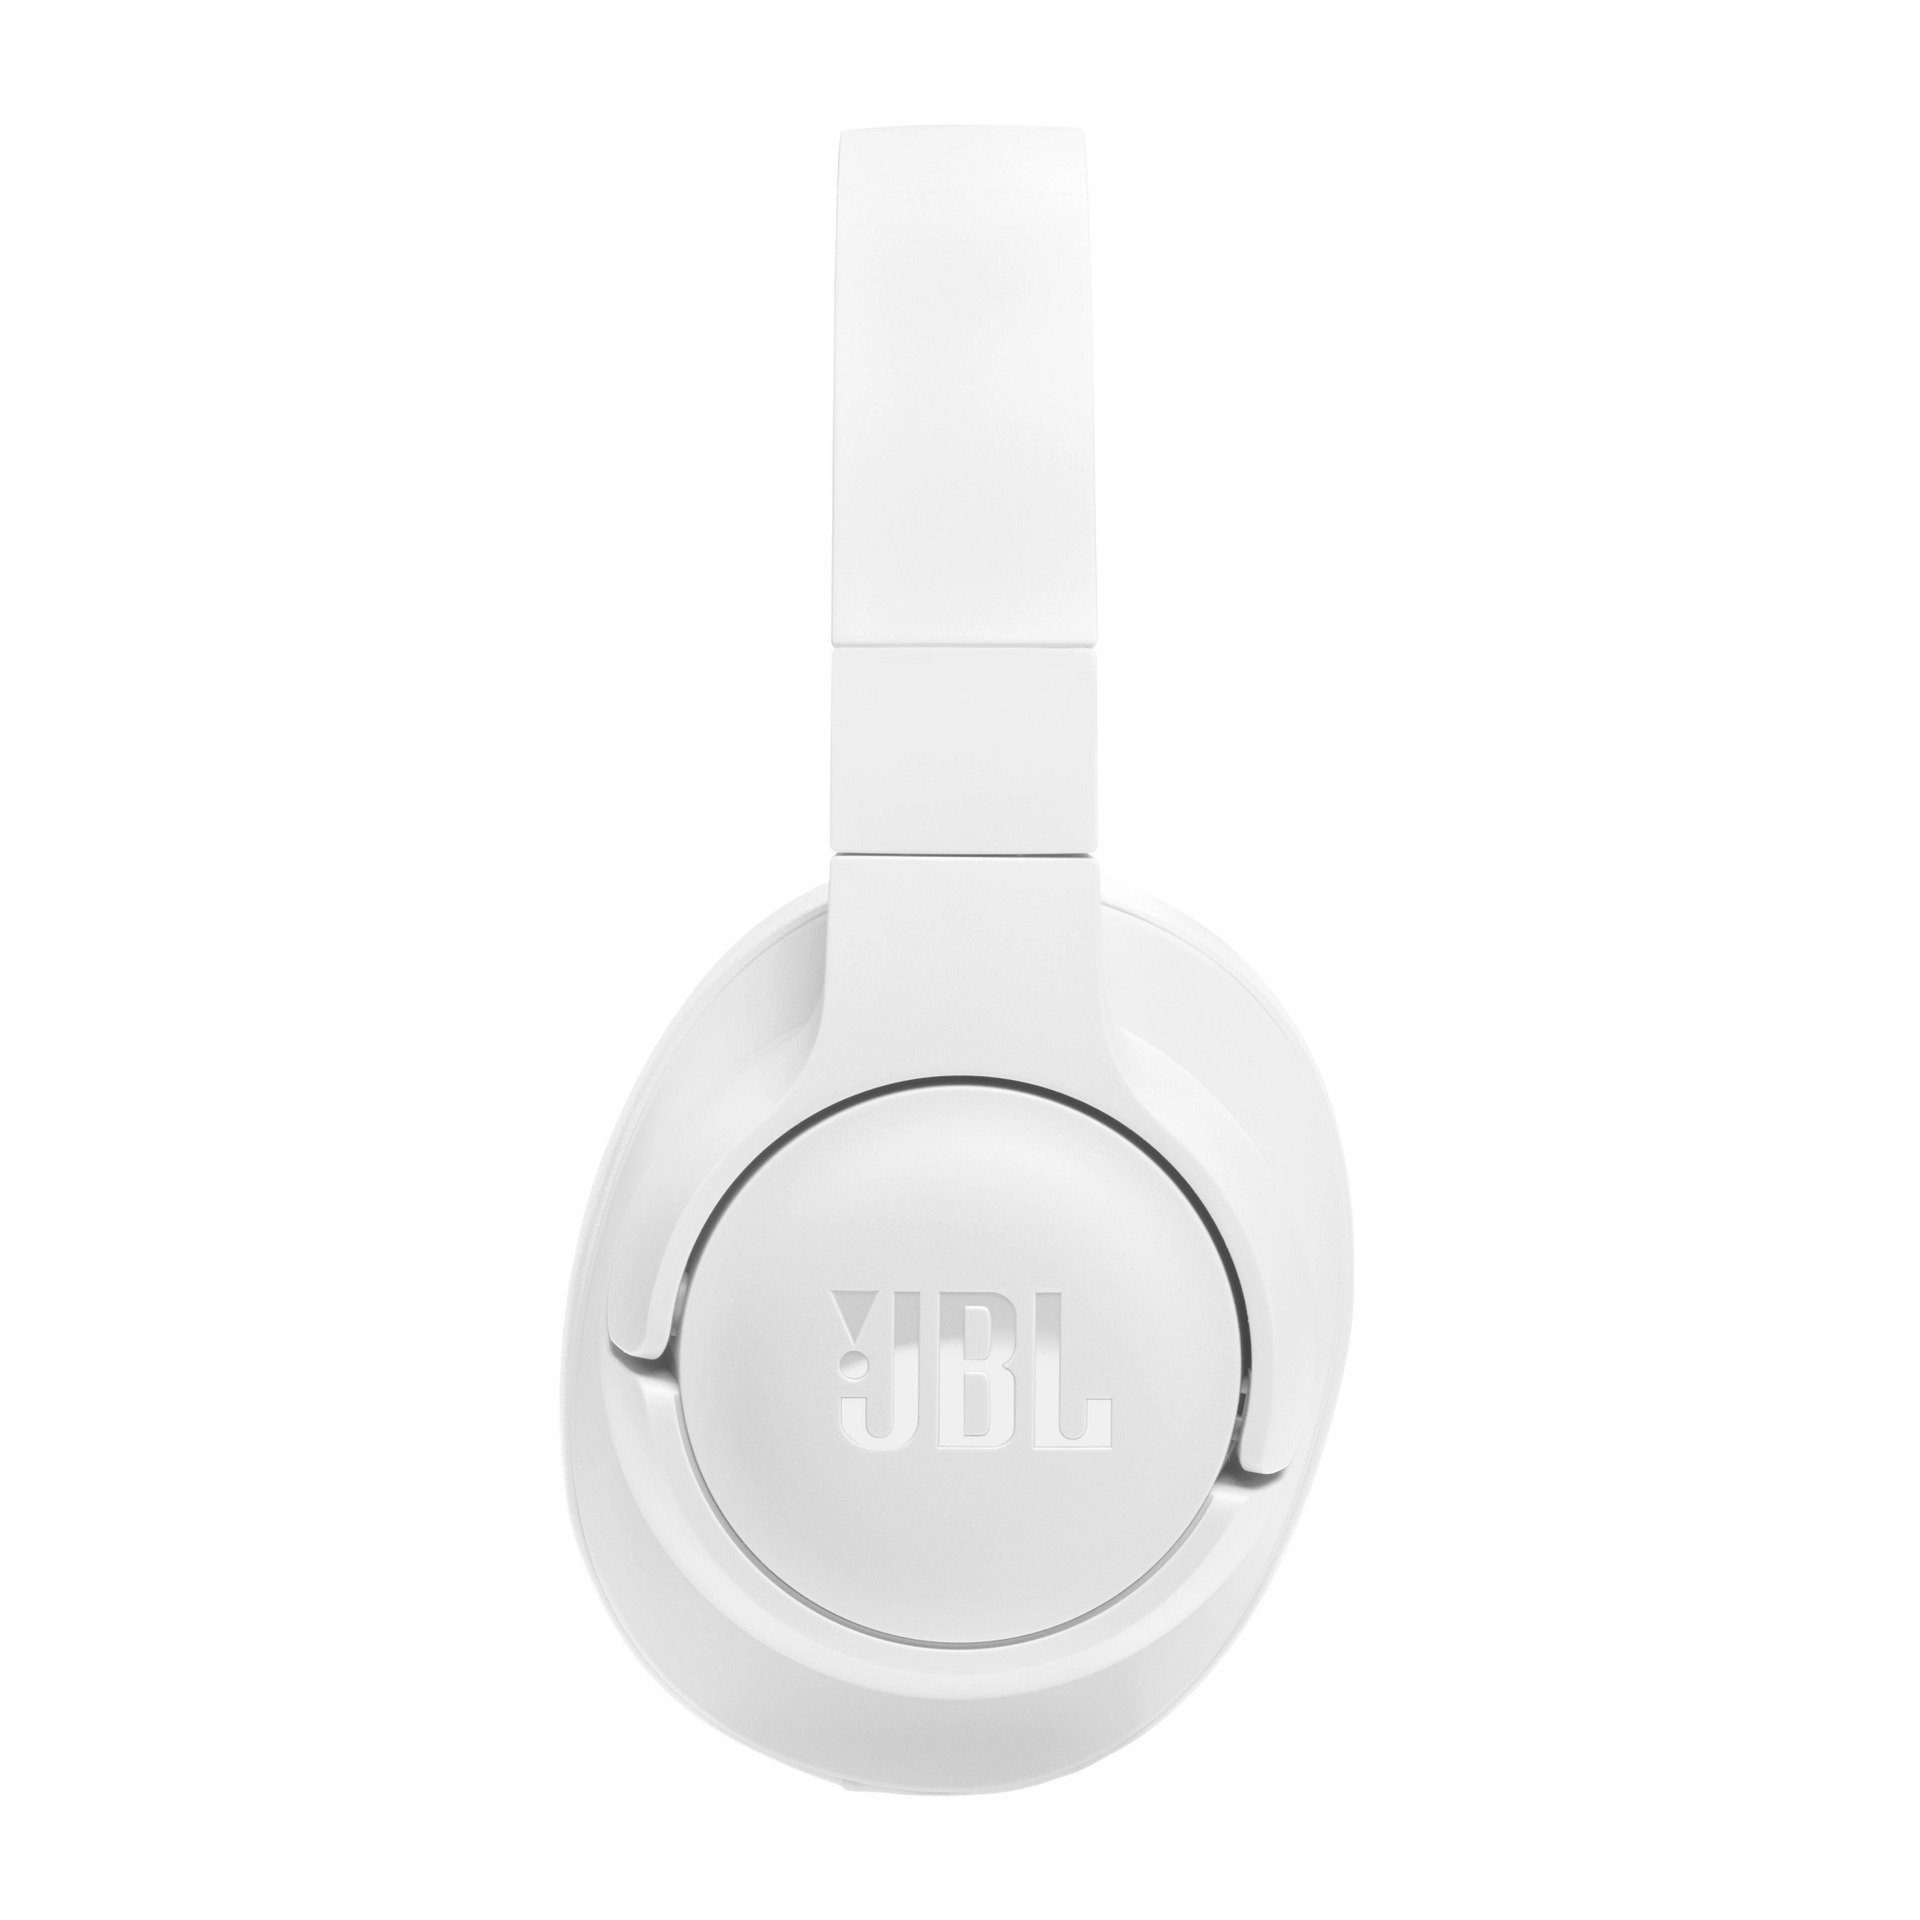 JBL Tune 720 BT Over-Ear-Kopfhörer Weiß